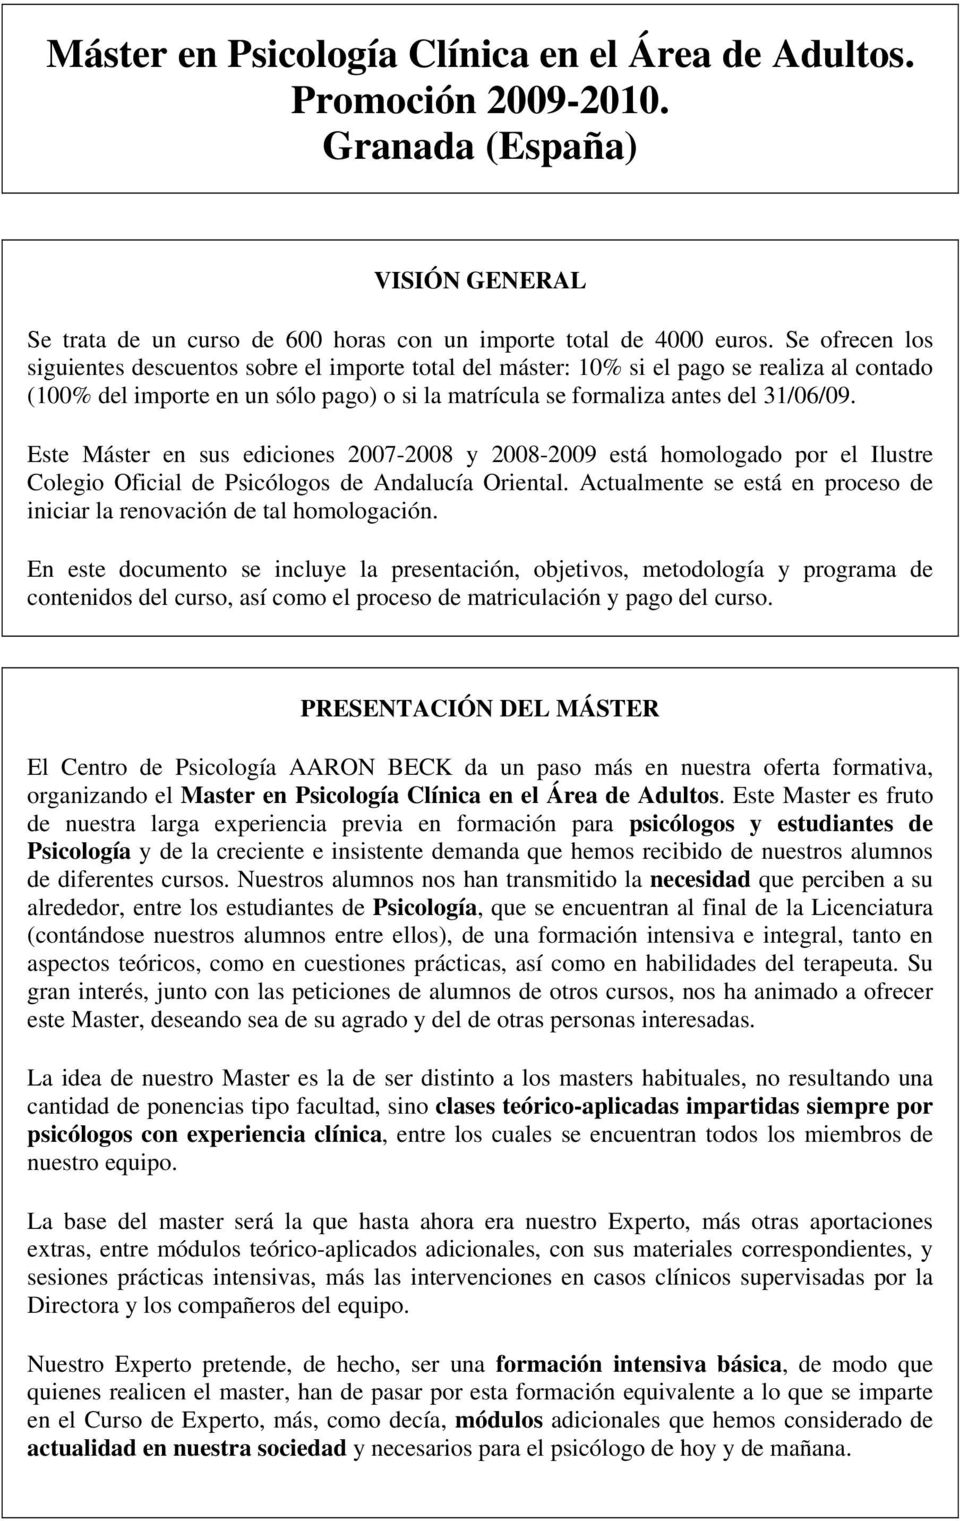 Este Máster en sus ediciones 2007-2008 y 2008-2009 está homologado por el Ilustre Colegio Oficial de Psicólogos de Andalucía Oriental.